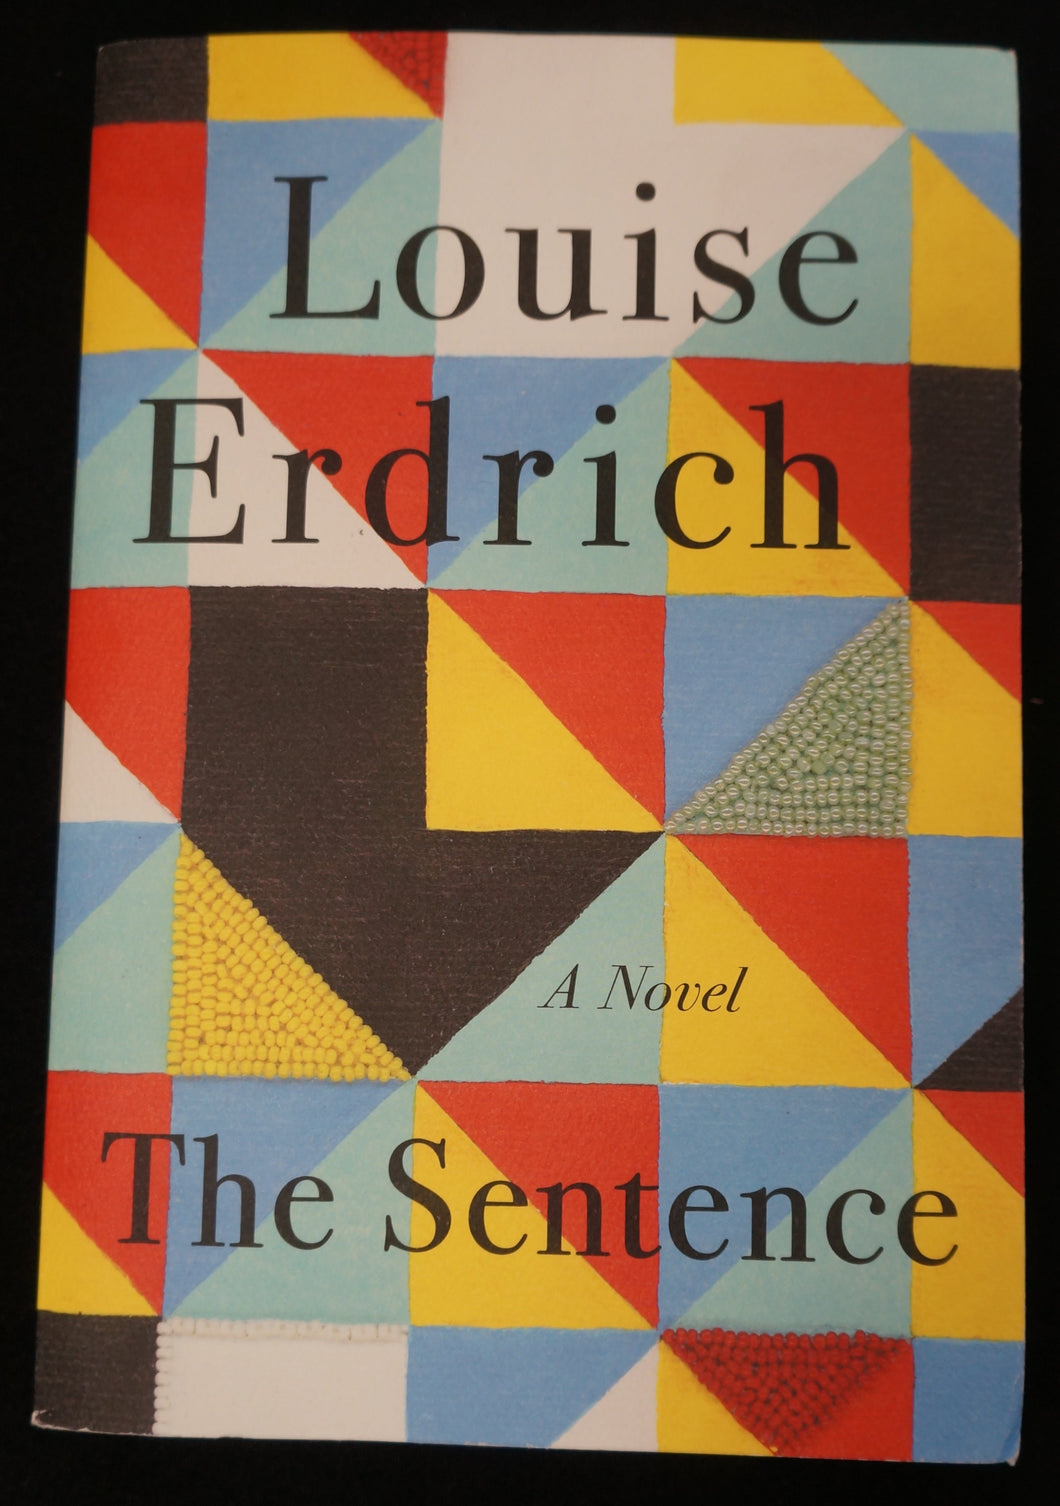 The Sentence: A Novel by Louise Erdrich